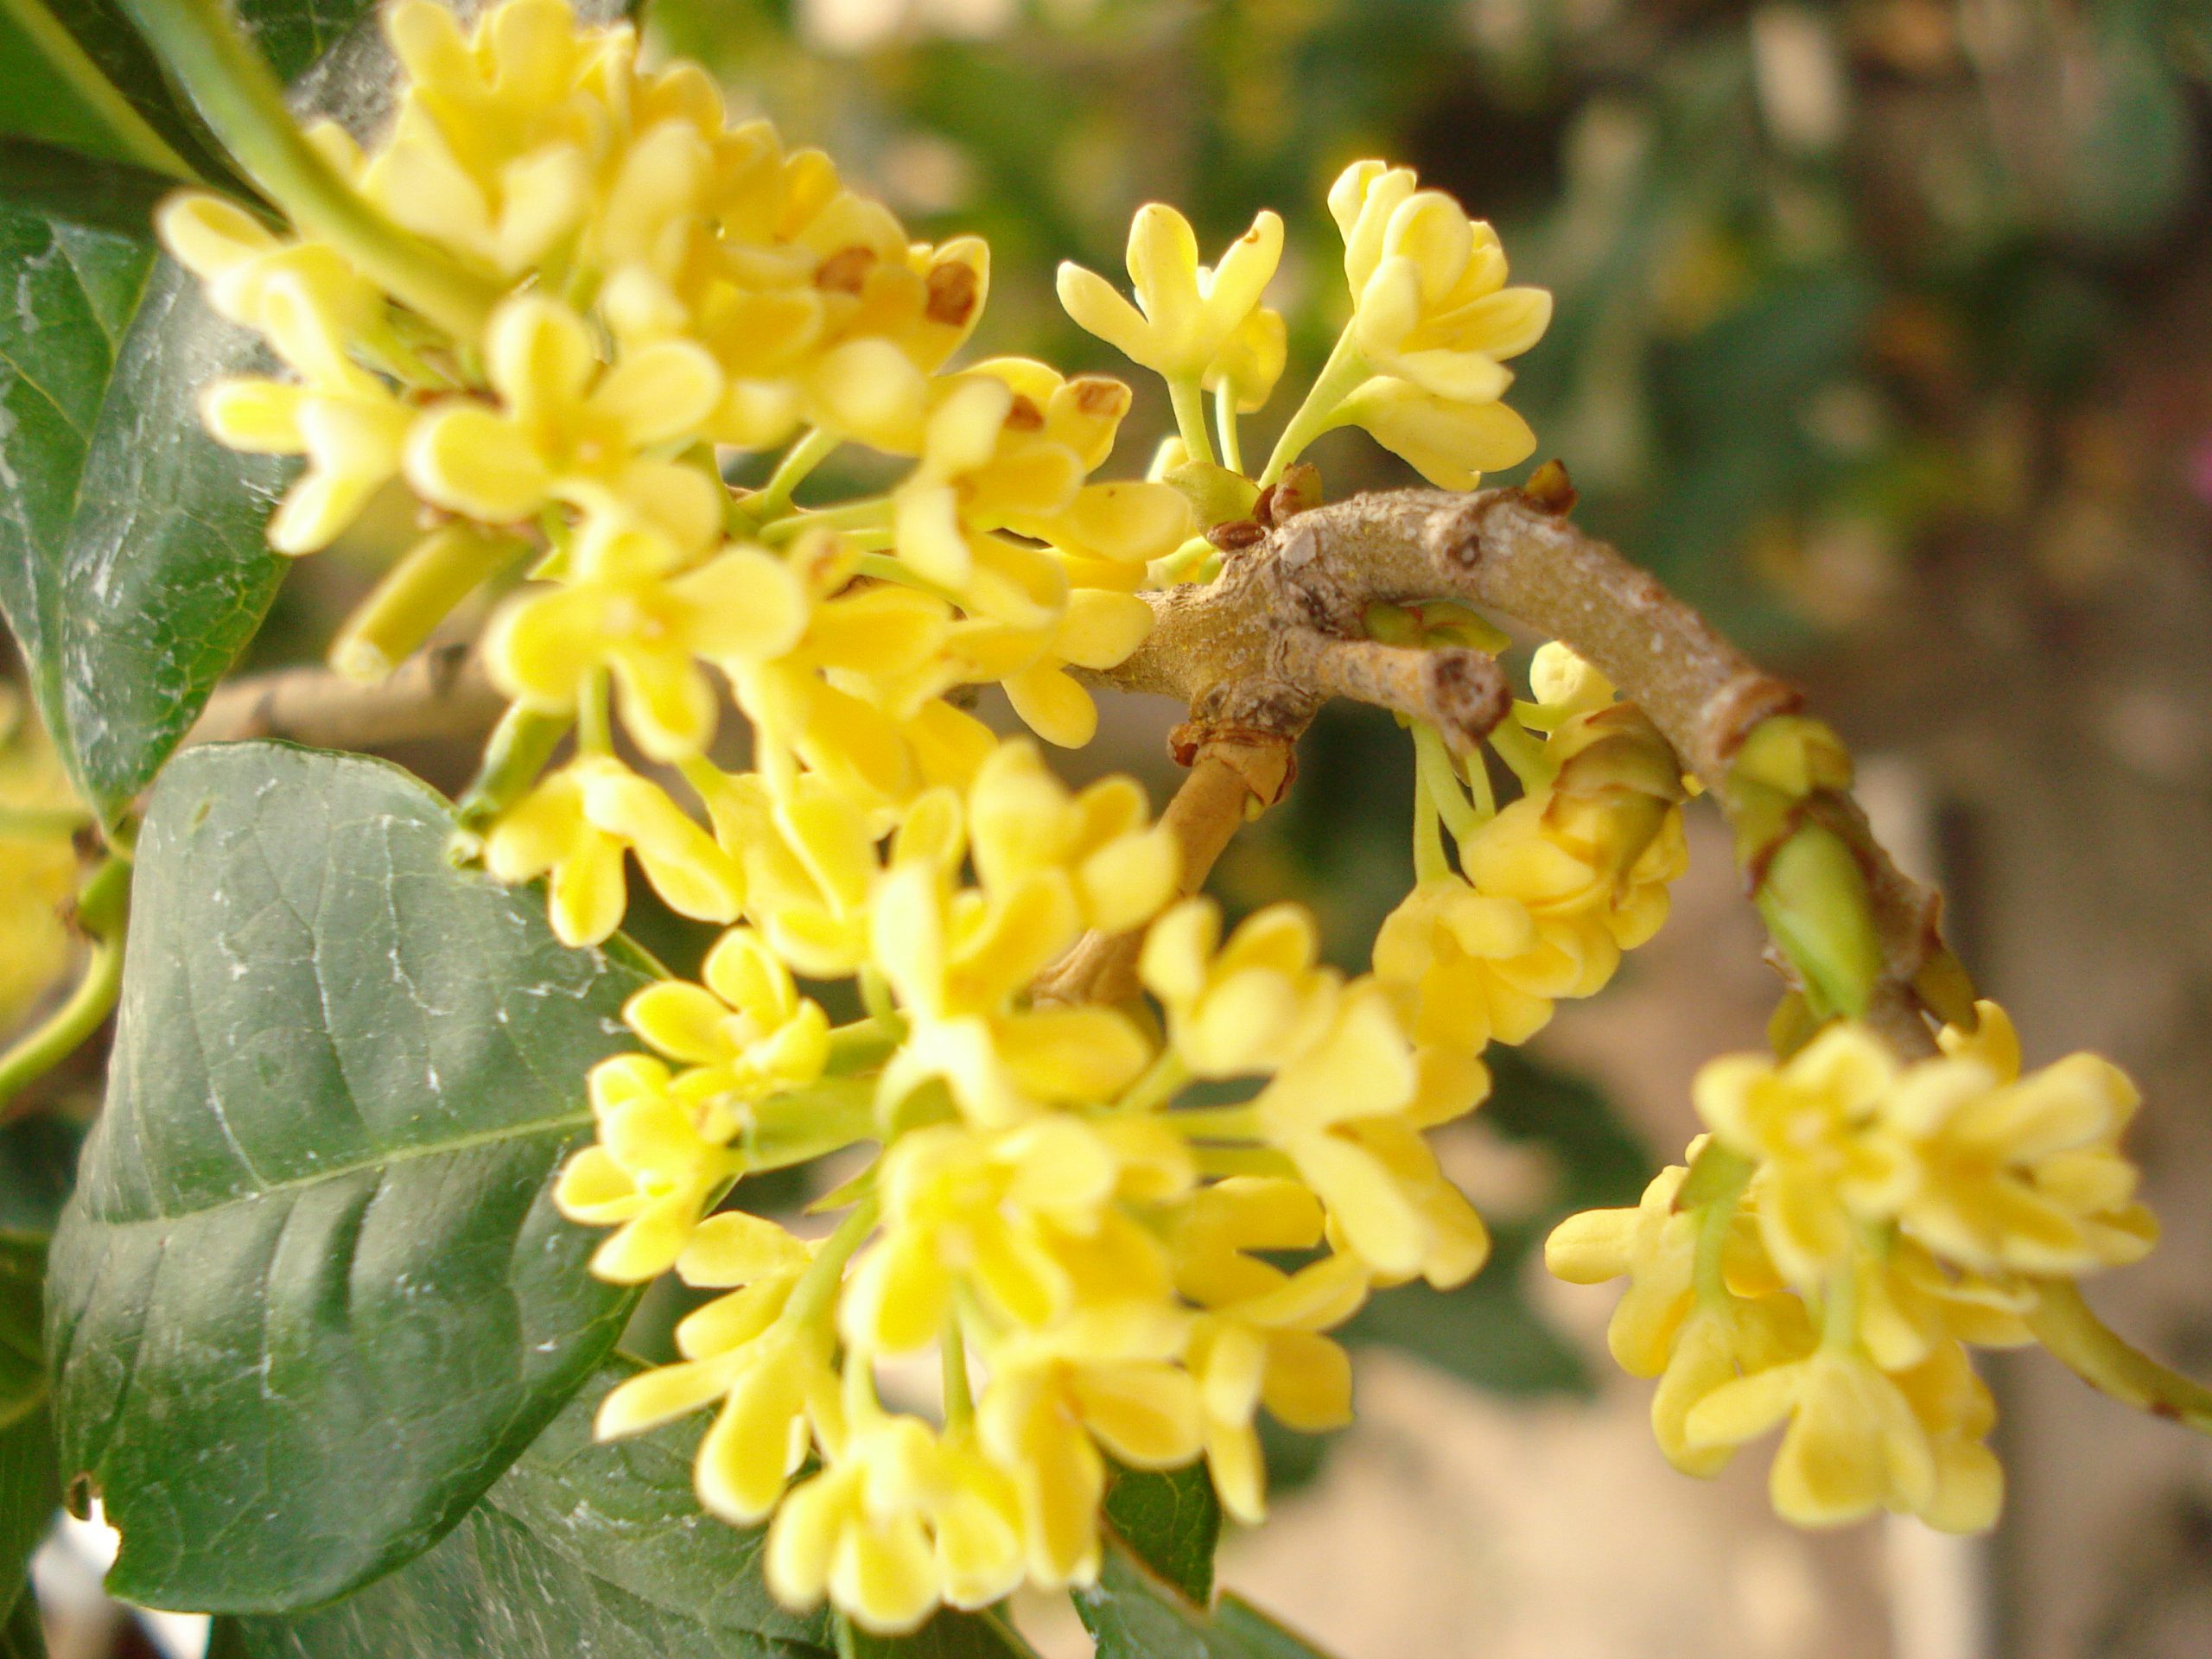 Hoa mộc vô cùng phổ biến ở châu á với nhiều hình thái khác nhau, ở Việt Nam hoa mộc vàng là điển hình nhất